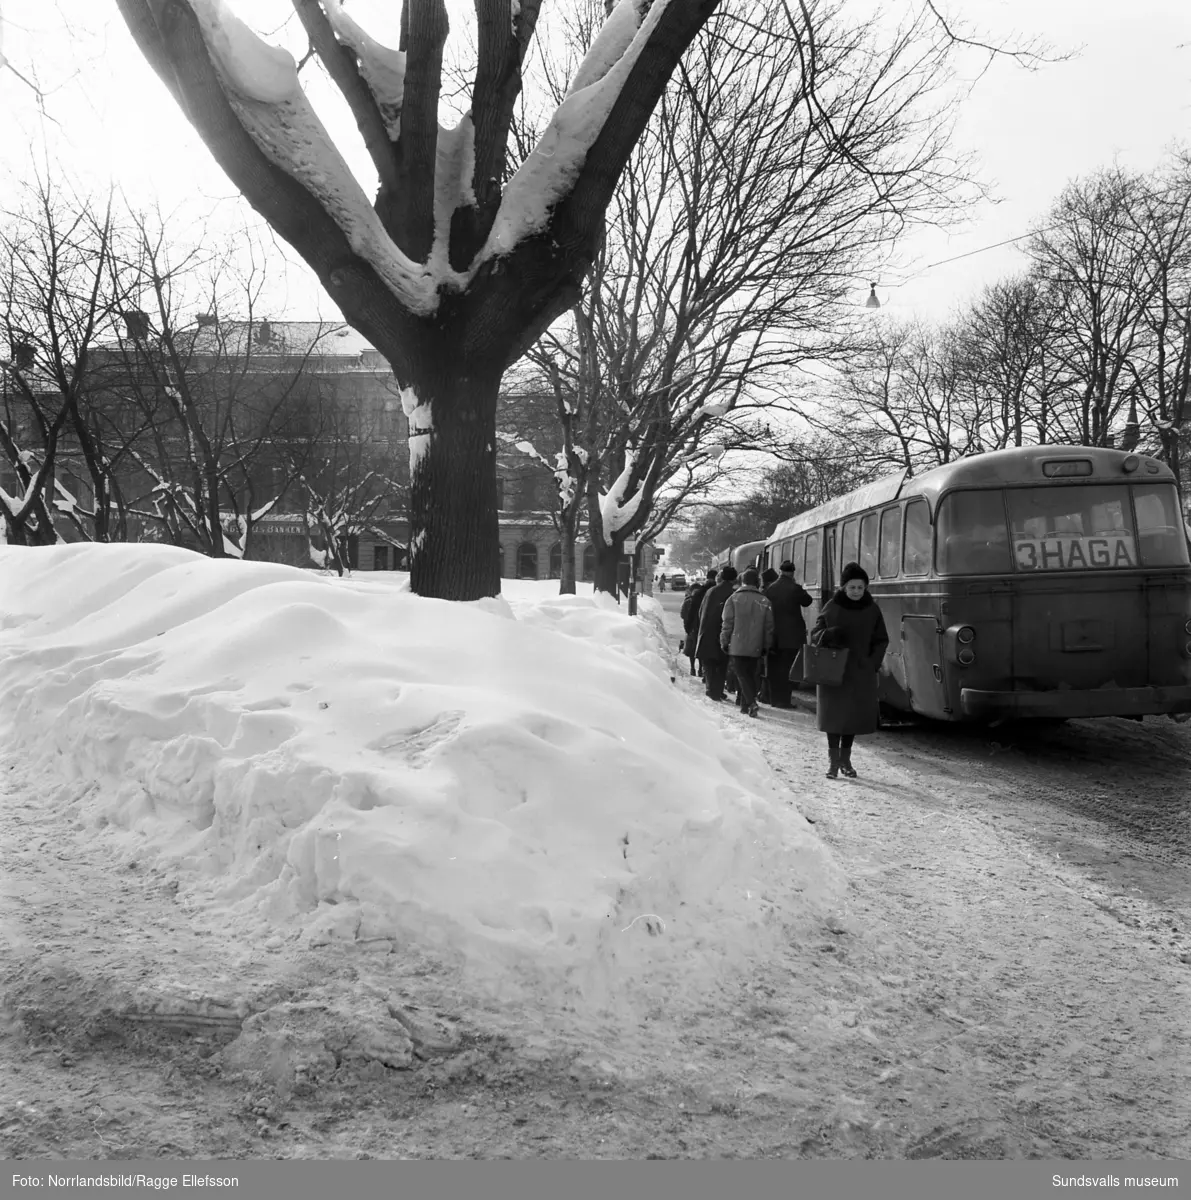 Vinterbilder från Sundsvall den snörika vintern 1966. Esplanaden, Vängåvan, torget och vid Selångersån.